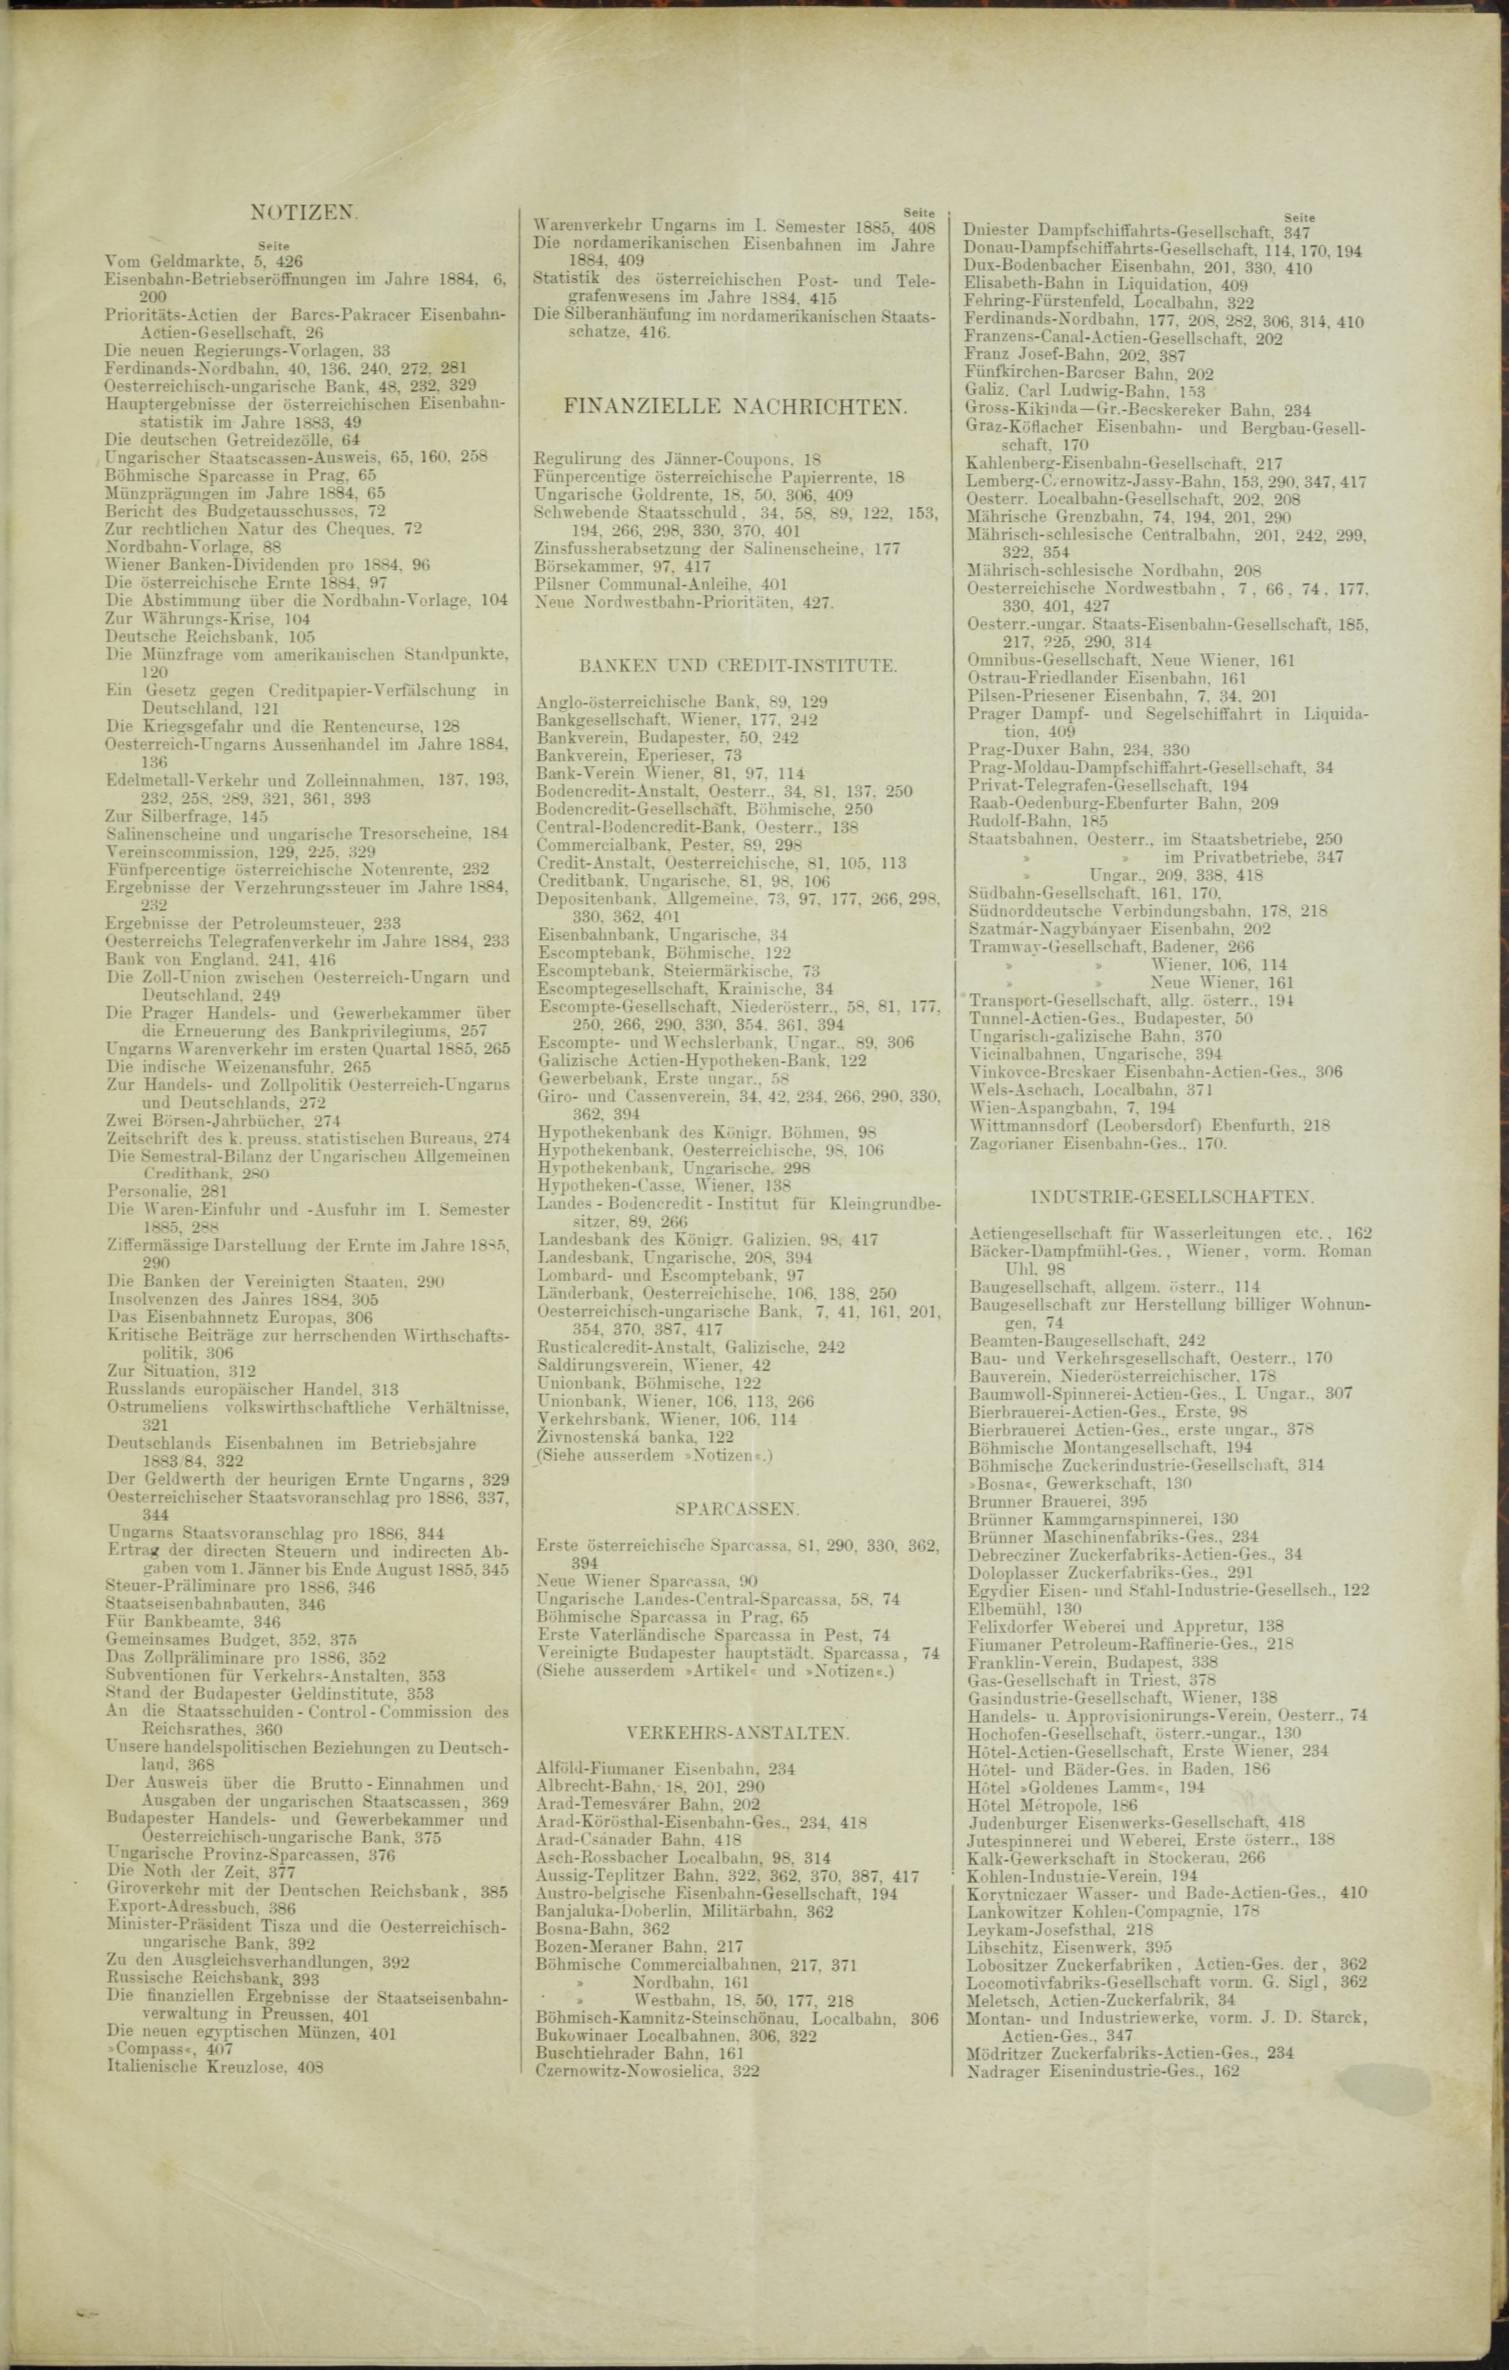 Der Tresor 22.10.1885 - Seite 11